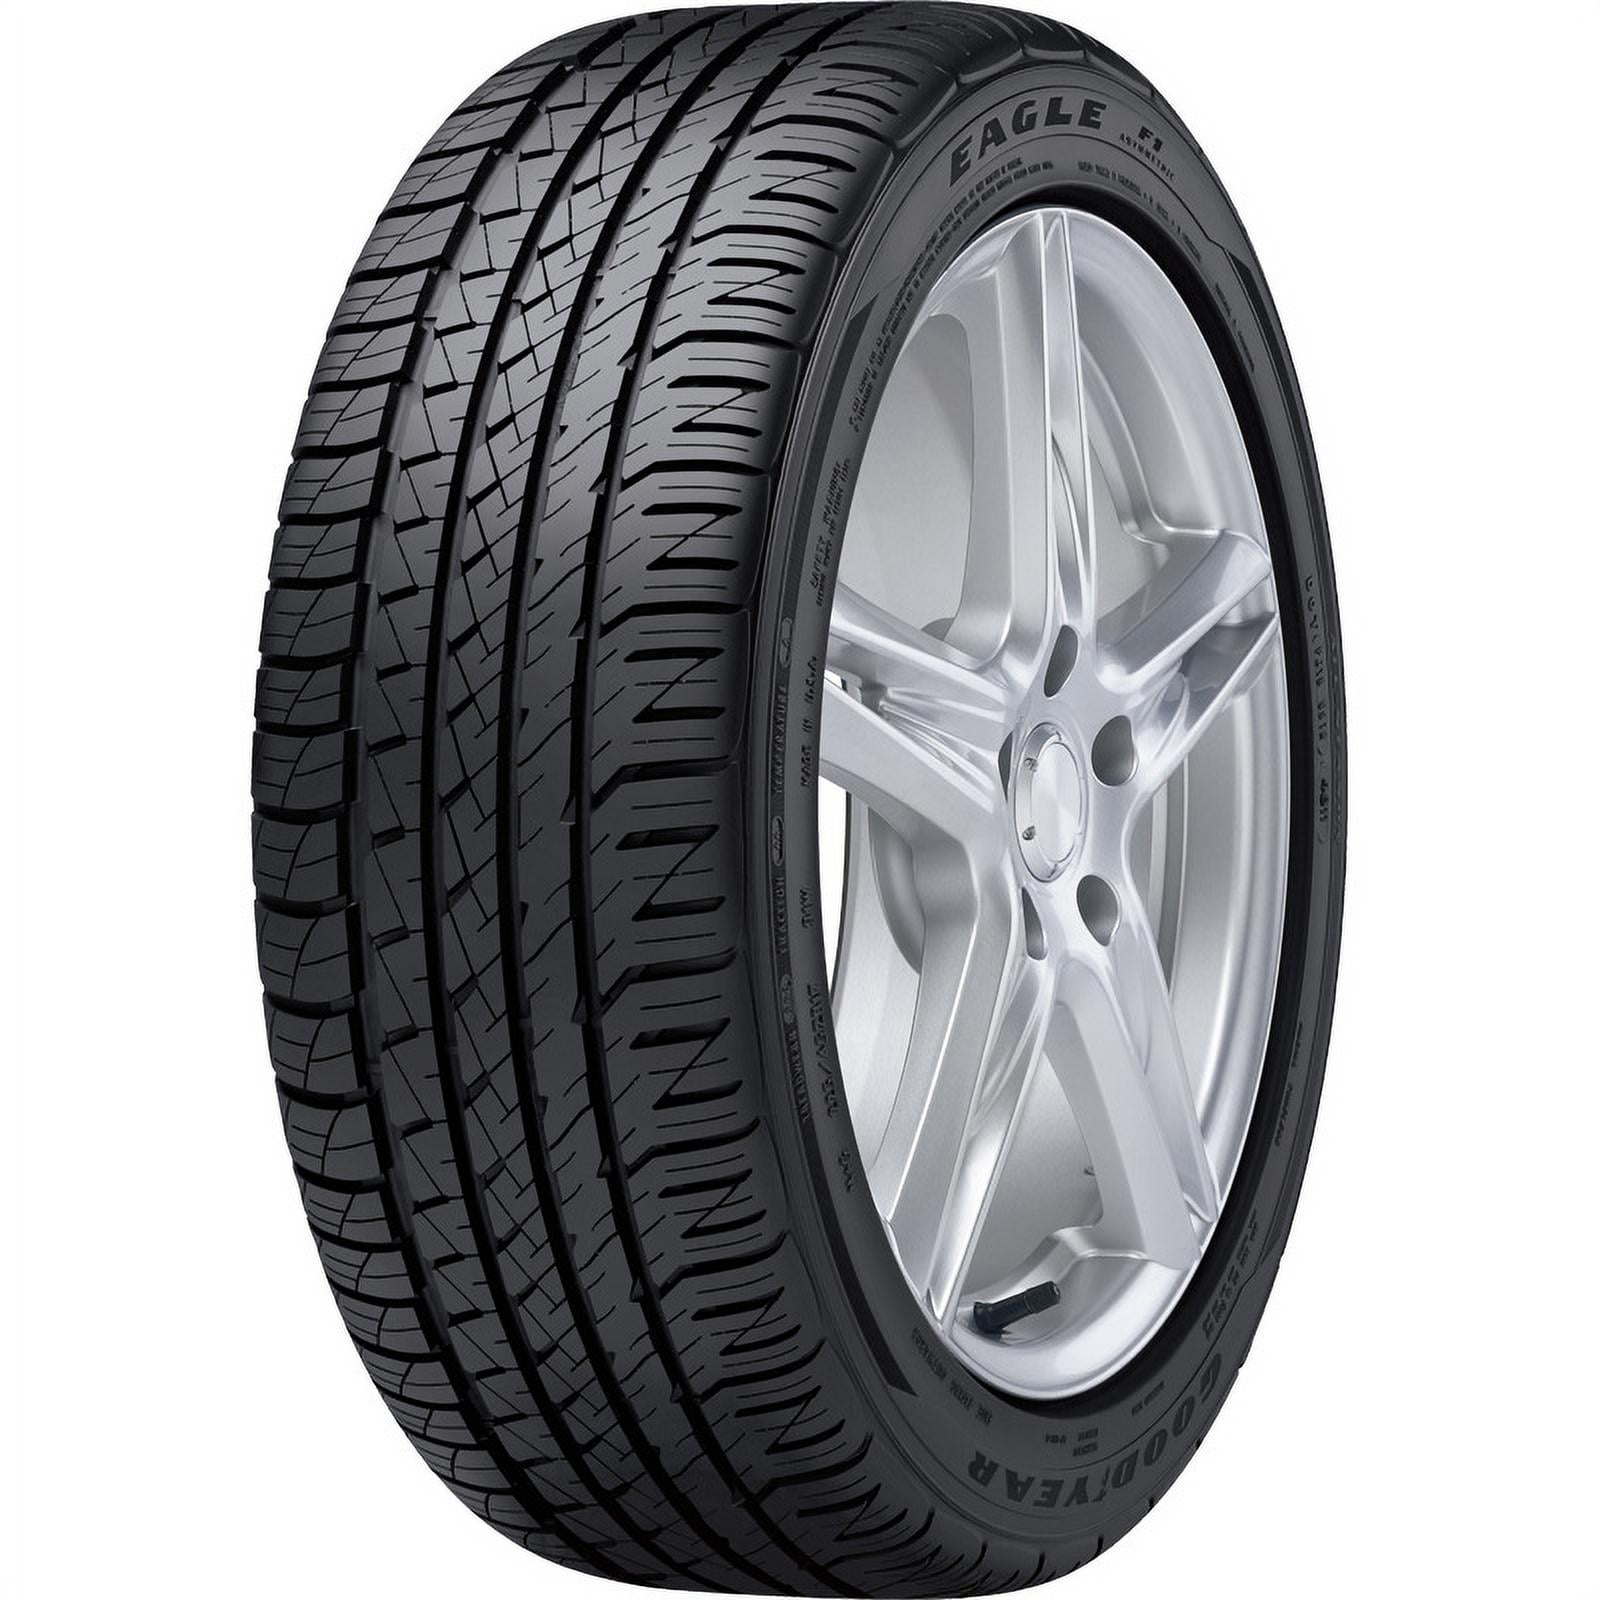 Goodyear Eagle F1 Asymmetric All-Season 255/45R18 99 W Tire